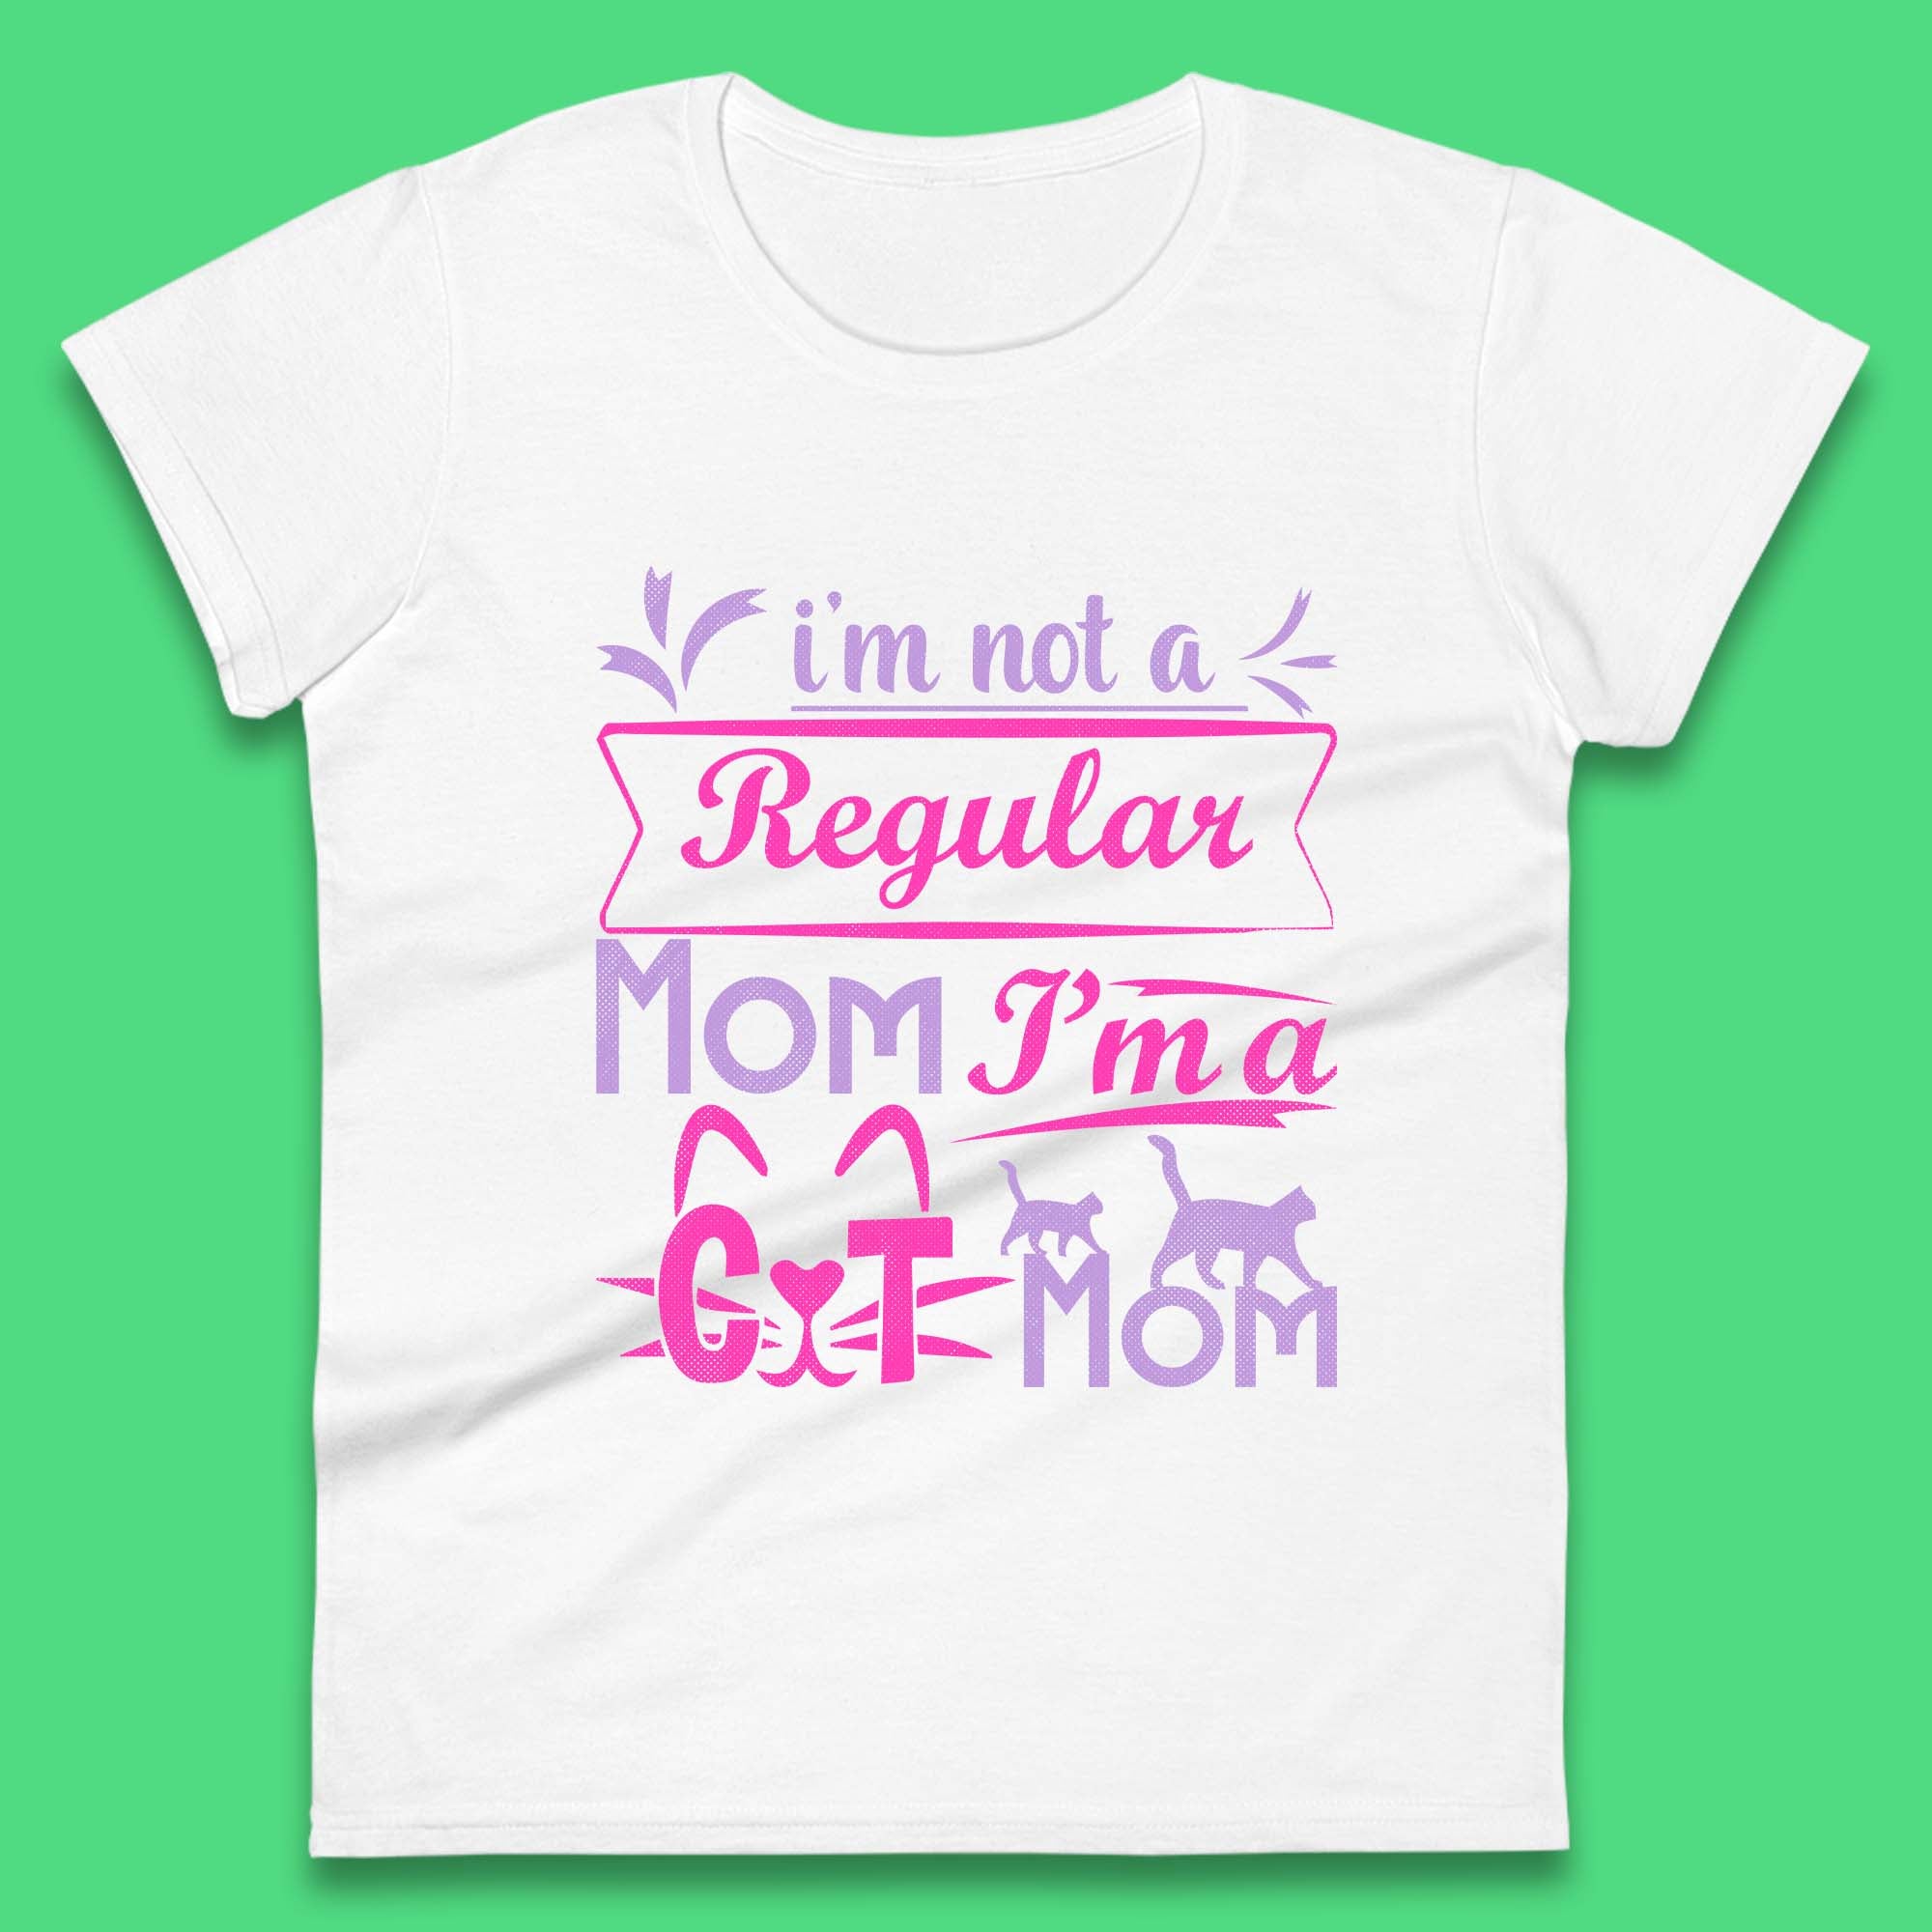 I'm A Cat Mom Womens T-Shirt